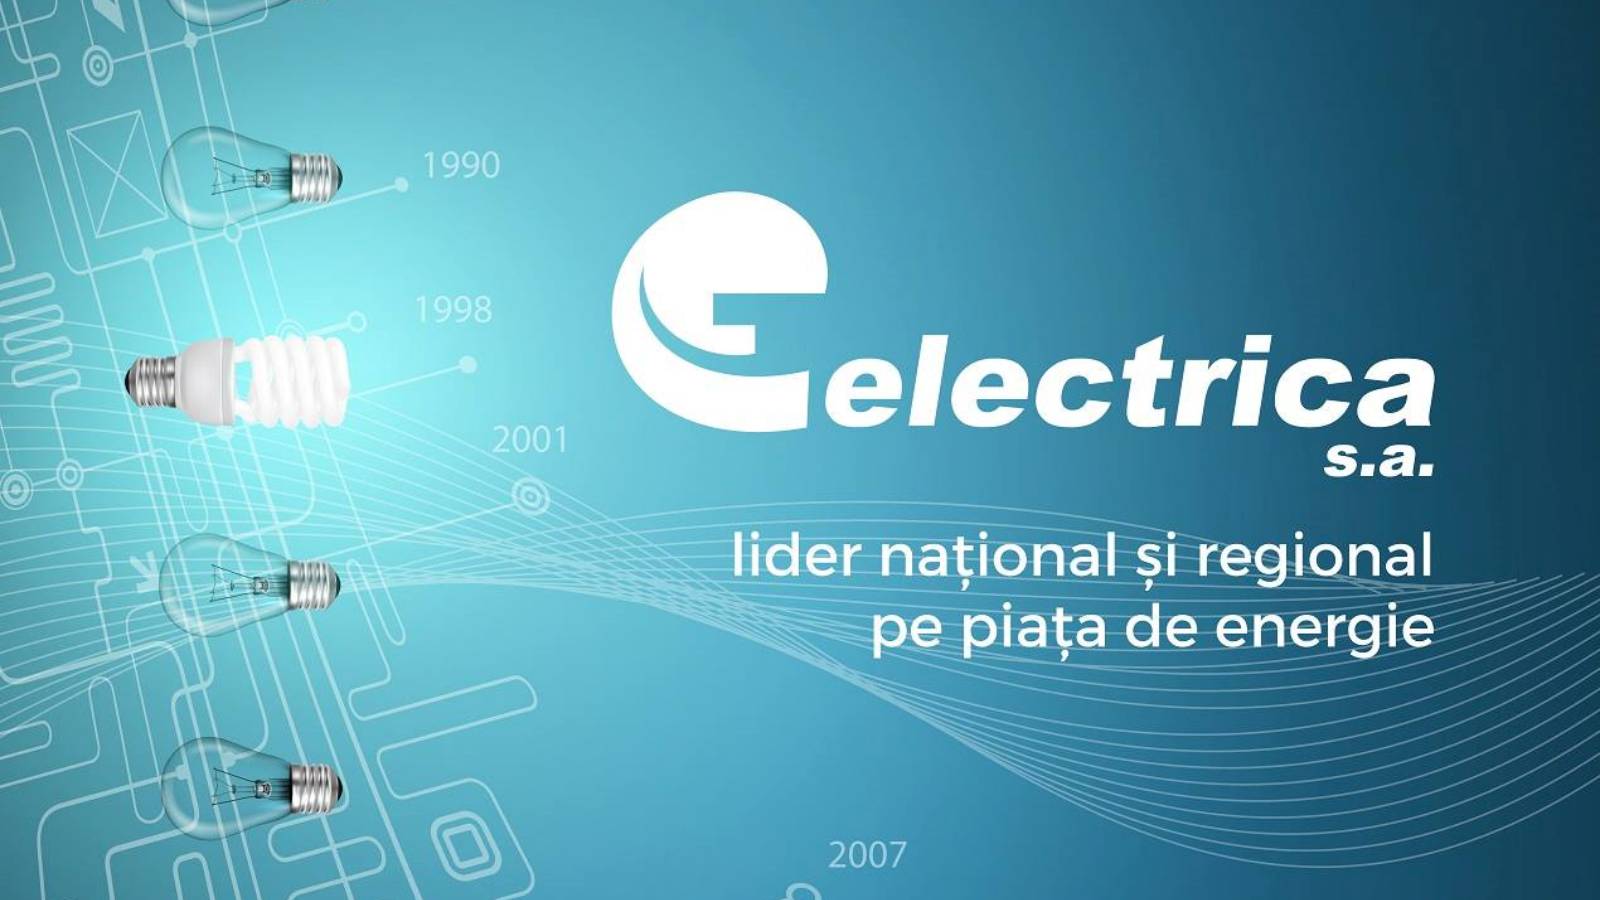 Informazioni ufficiali Electrica LAST MOMENT Rivolgiti ai clienti della Romania